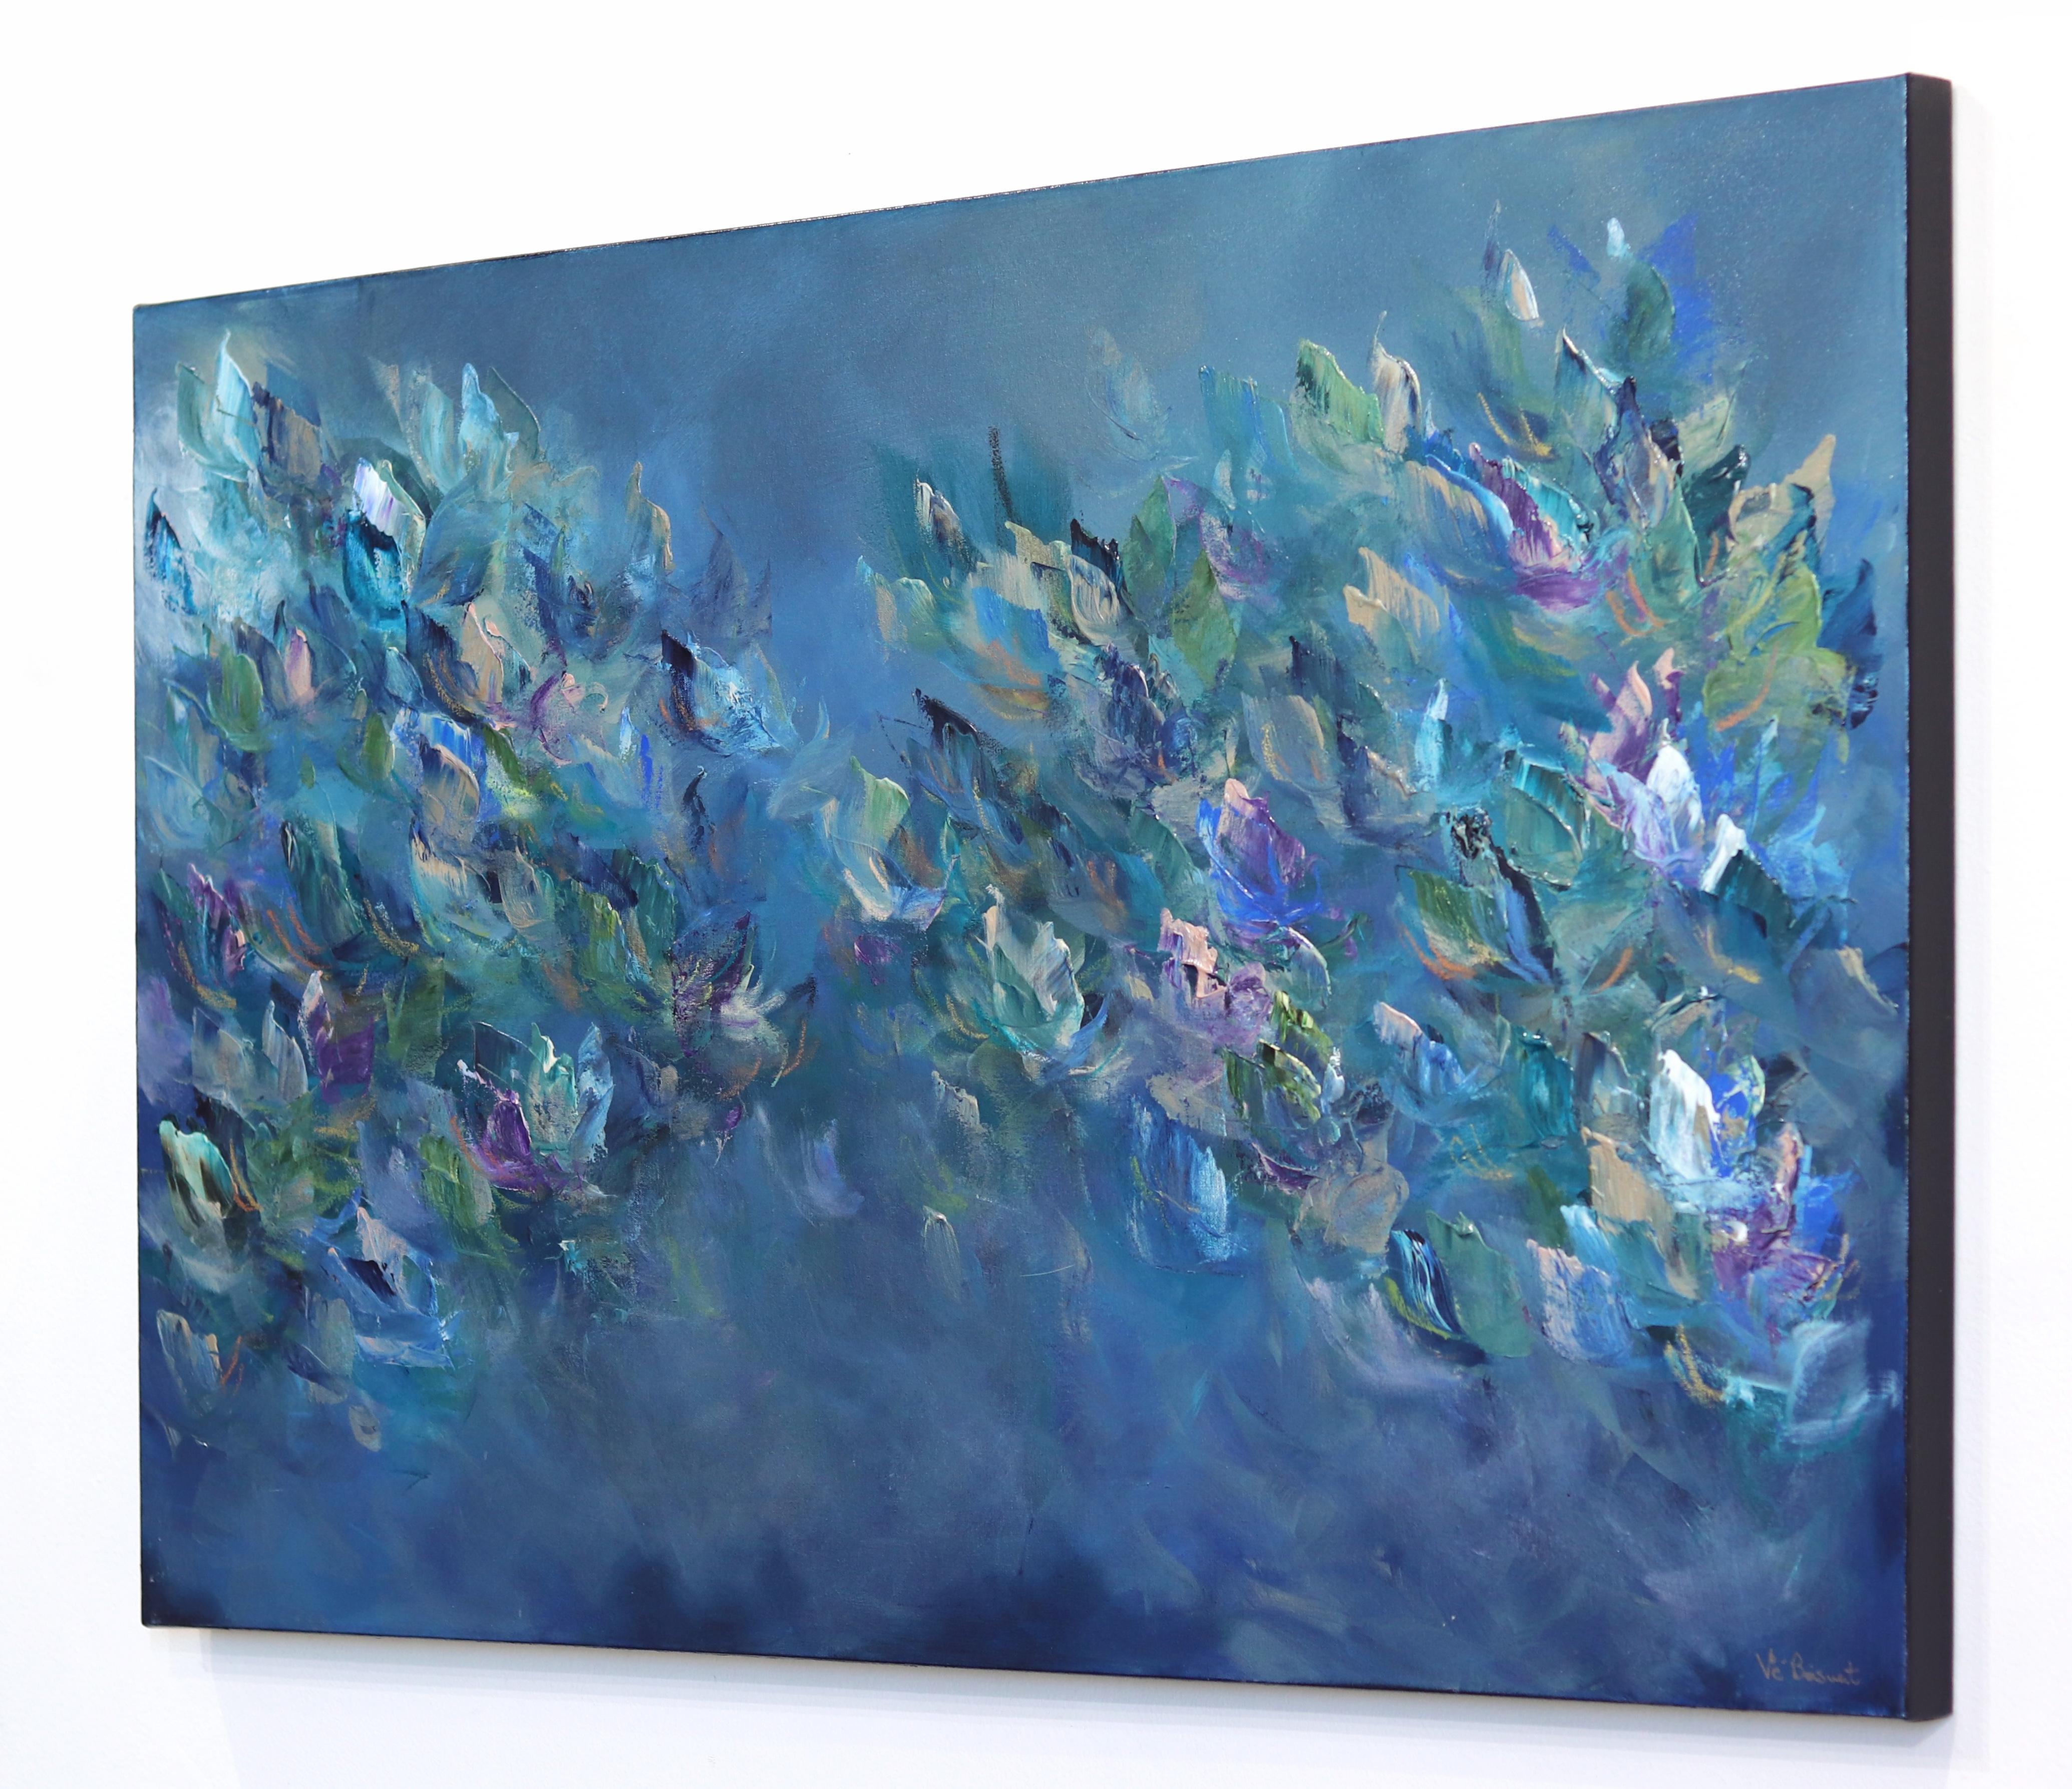 S'inspirant d'une interprétation immersive et impressionniste de la Nature, l'artiste canadienne Vé Boisvert peint des œuvres originales texturées qui capturent les effets fugaces de la lumière et de la couleur exprimés dans les qualités éphémères